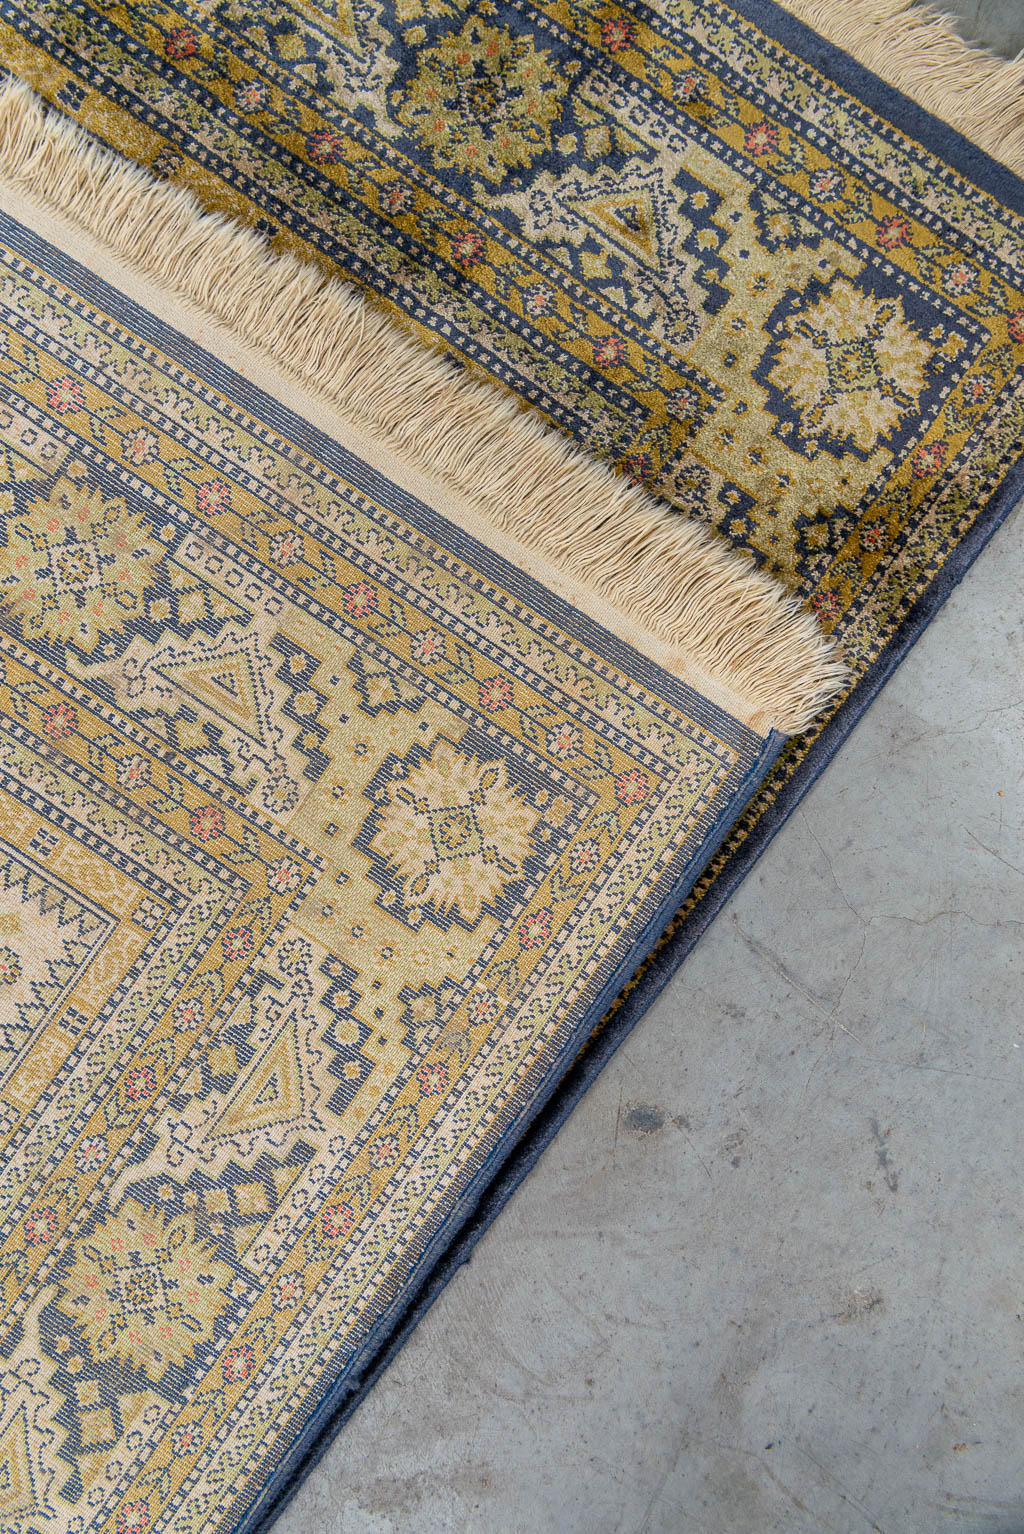 A carpet made of silk, machine made. (170 x 102 cm)